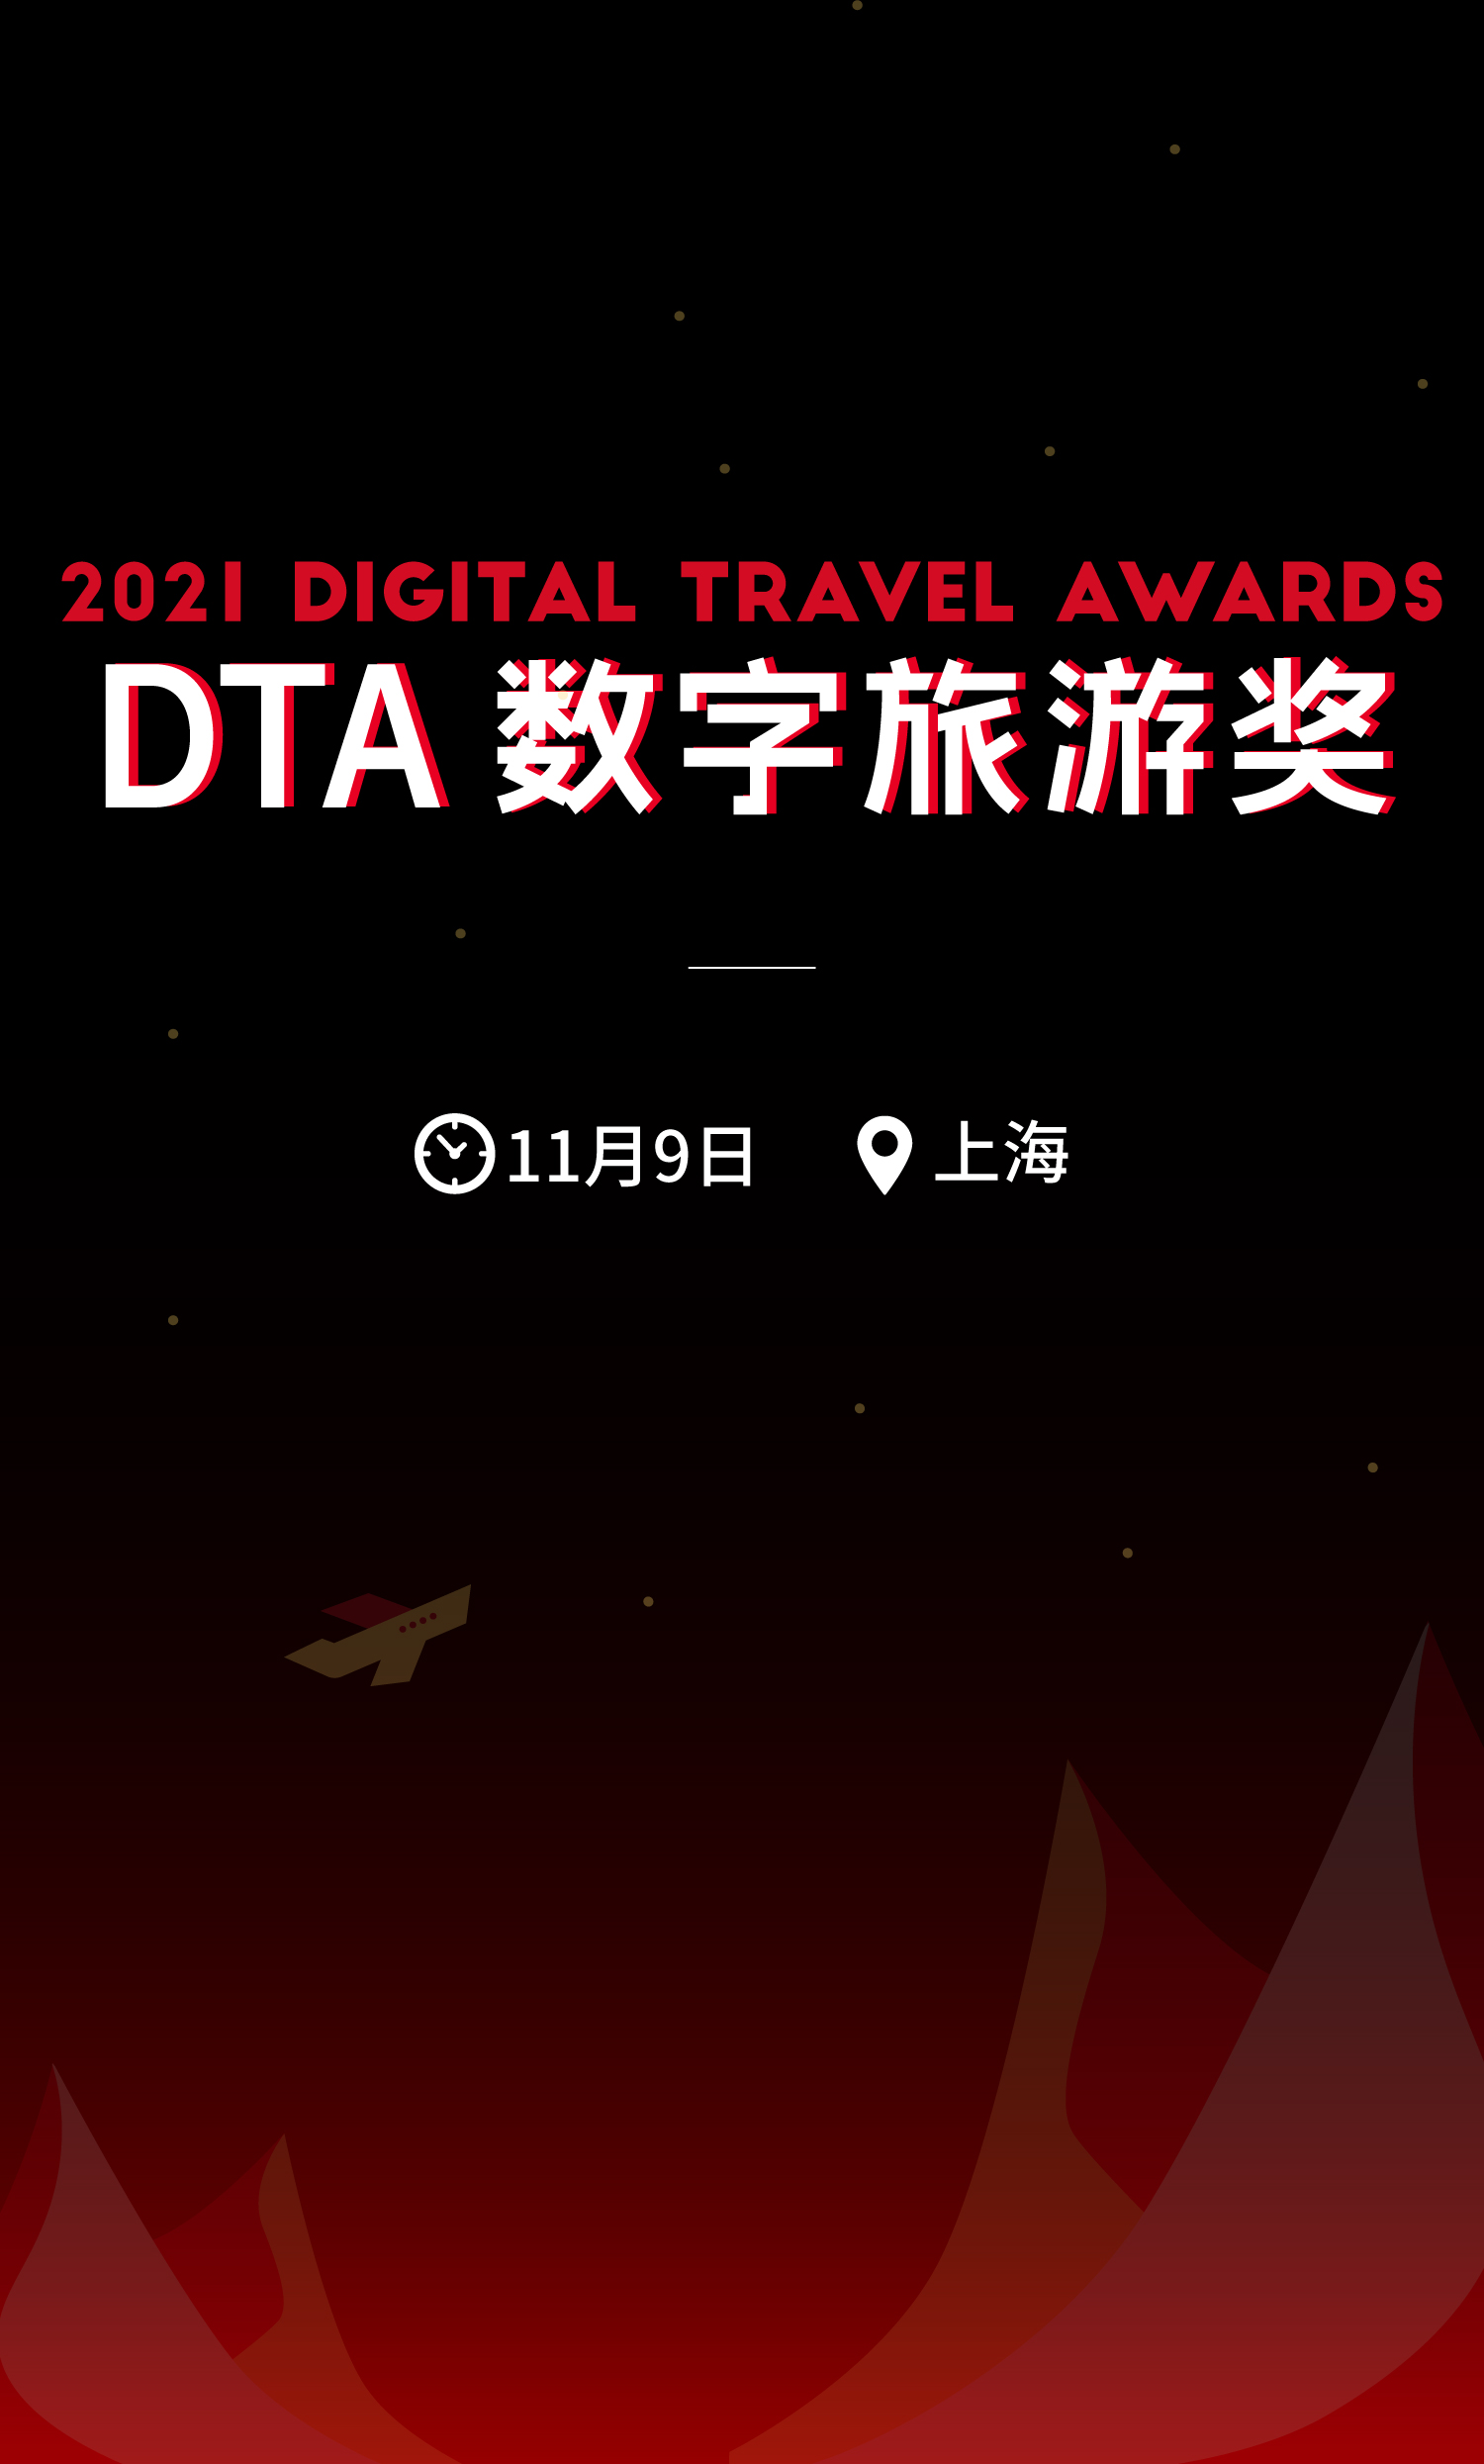 2021 DTA数字旅游奖